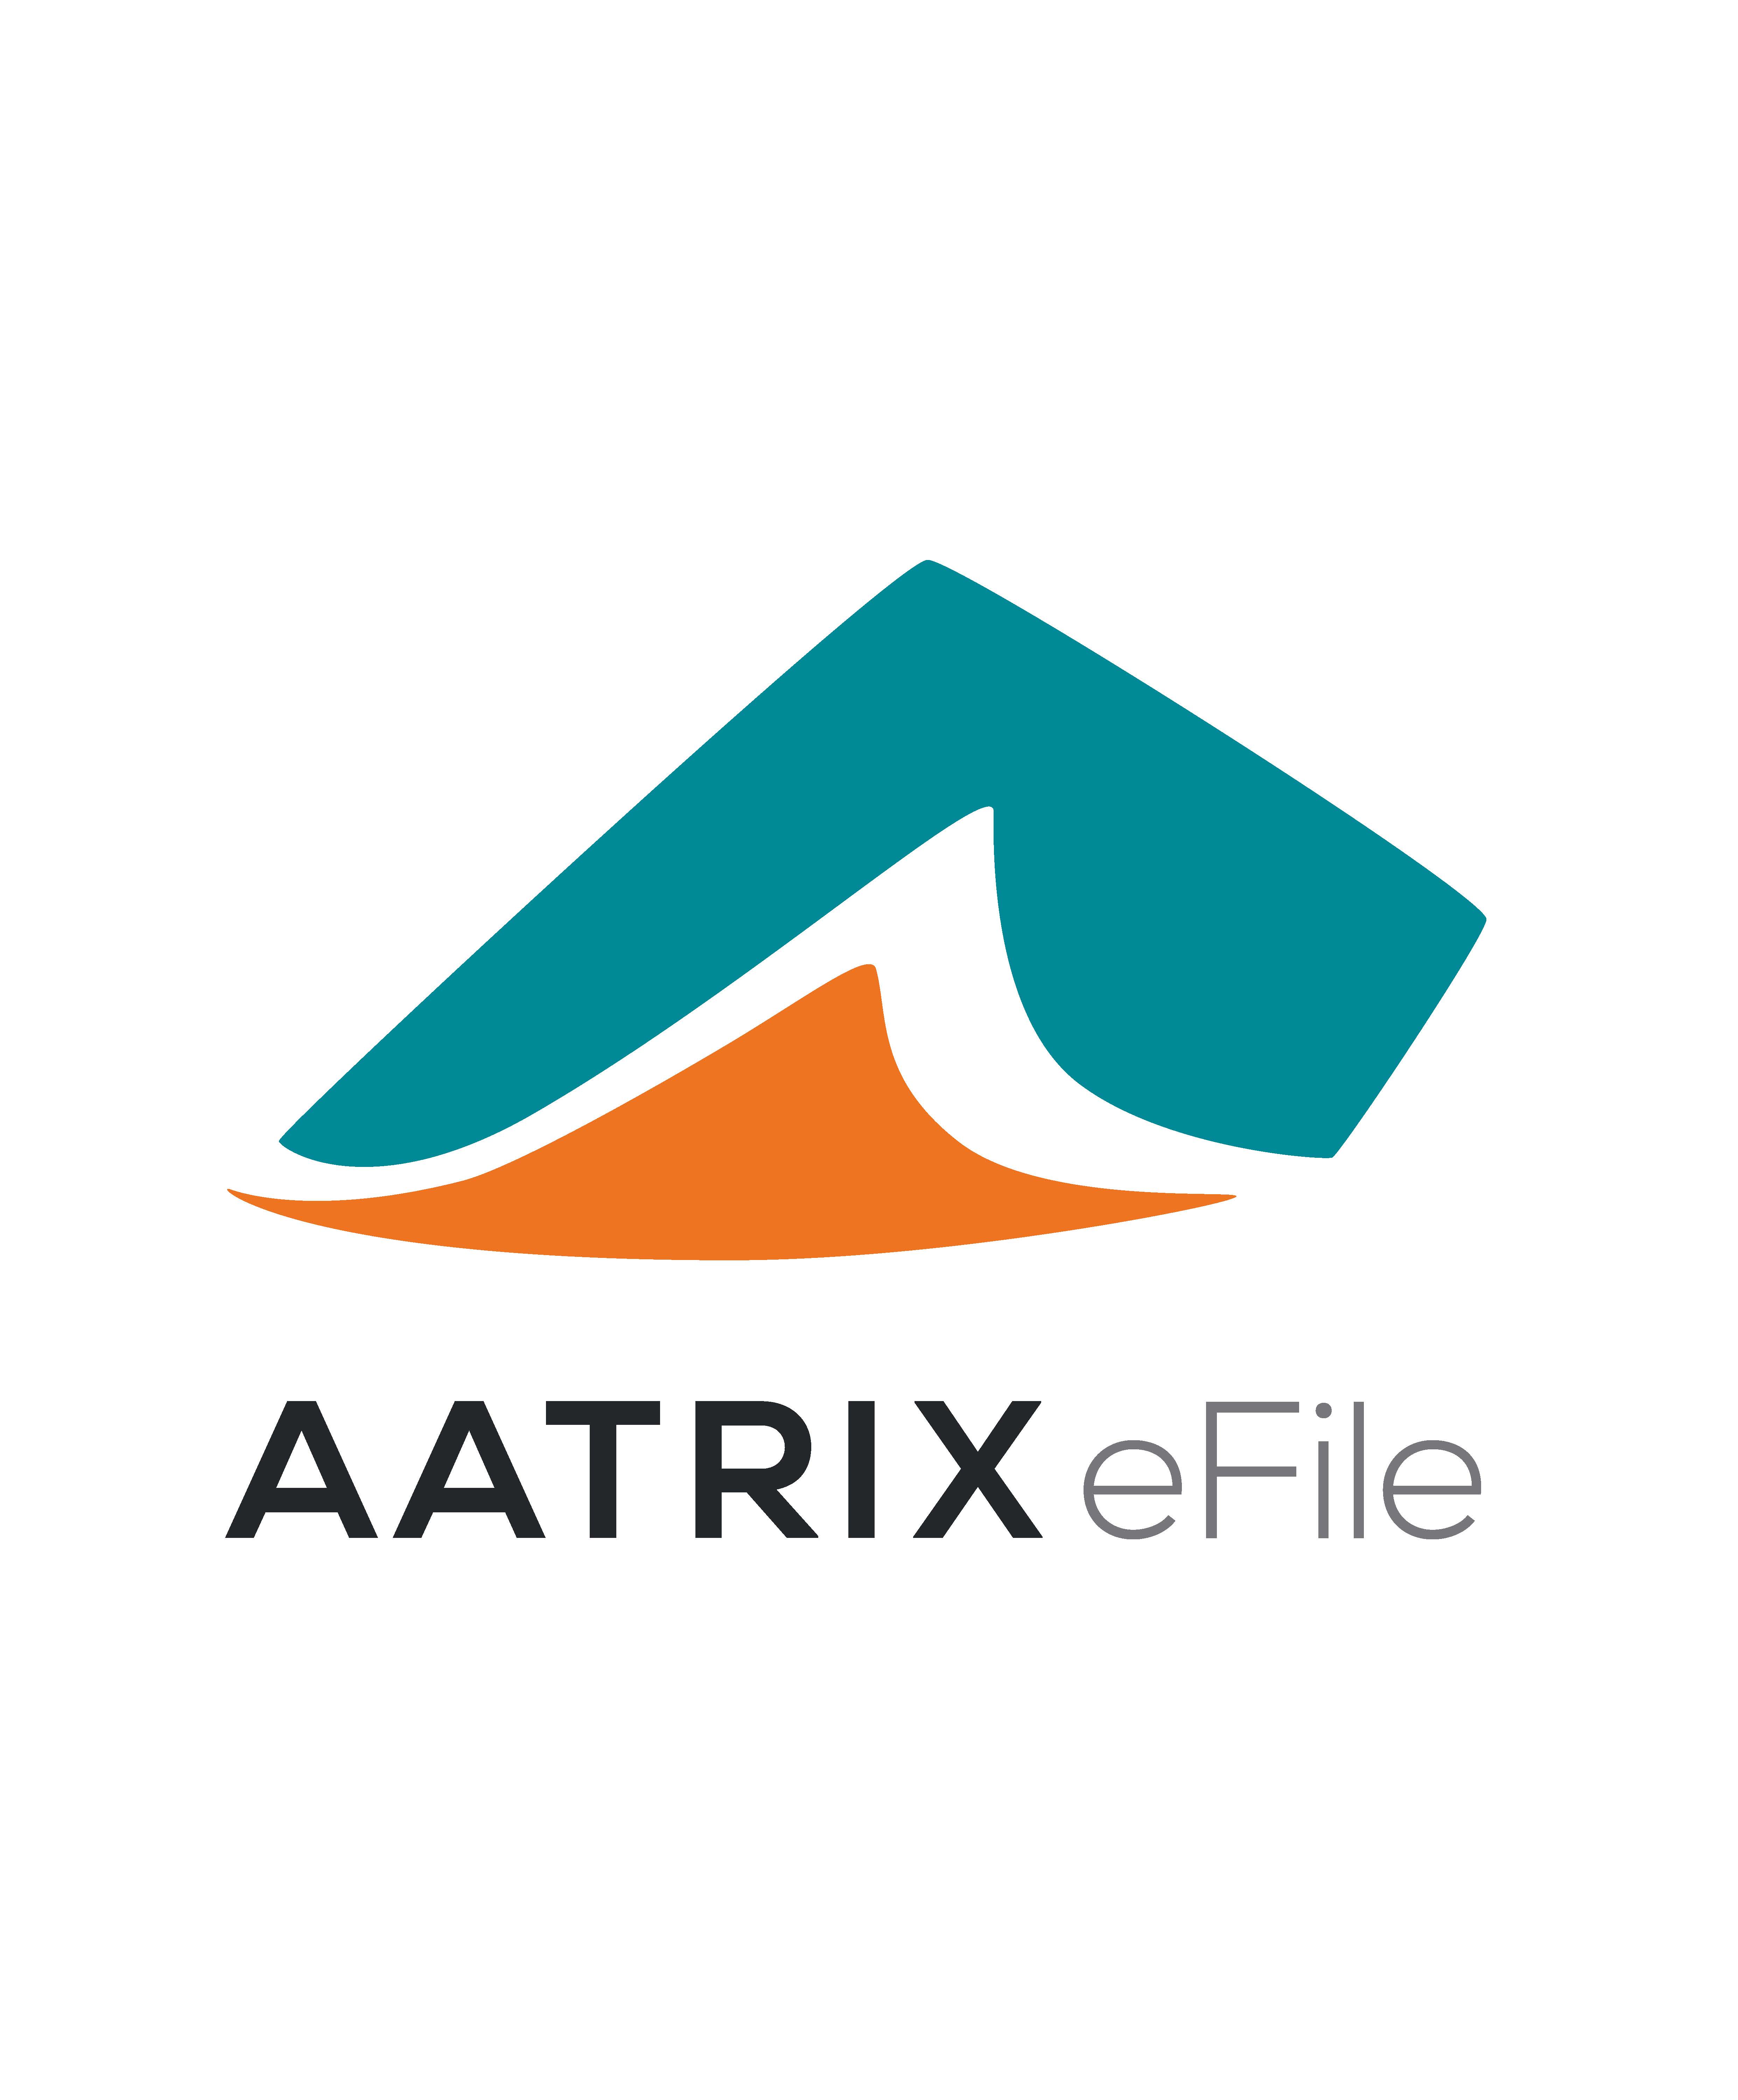 Aatrix software